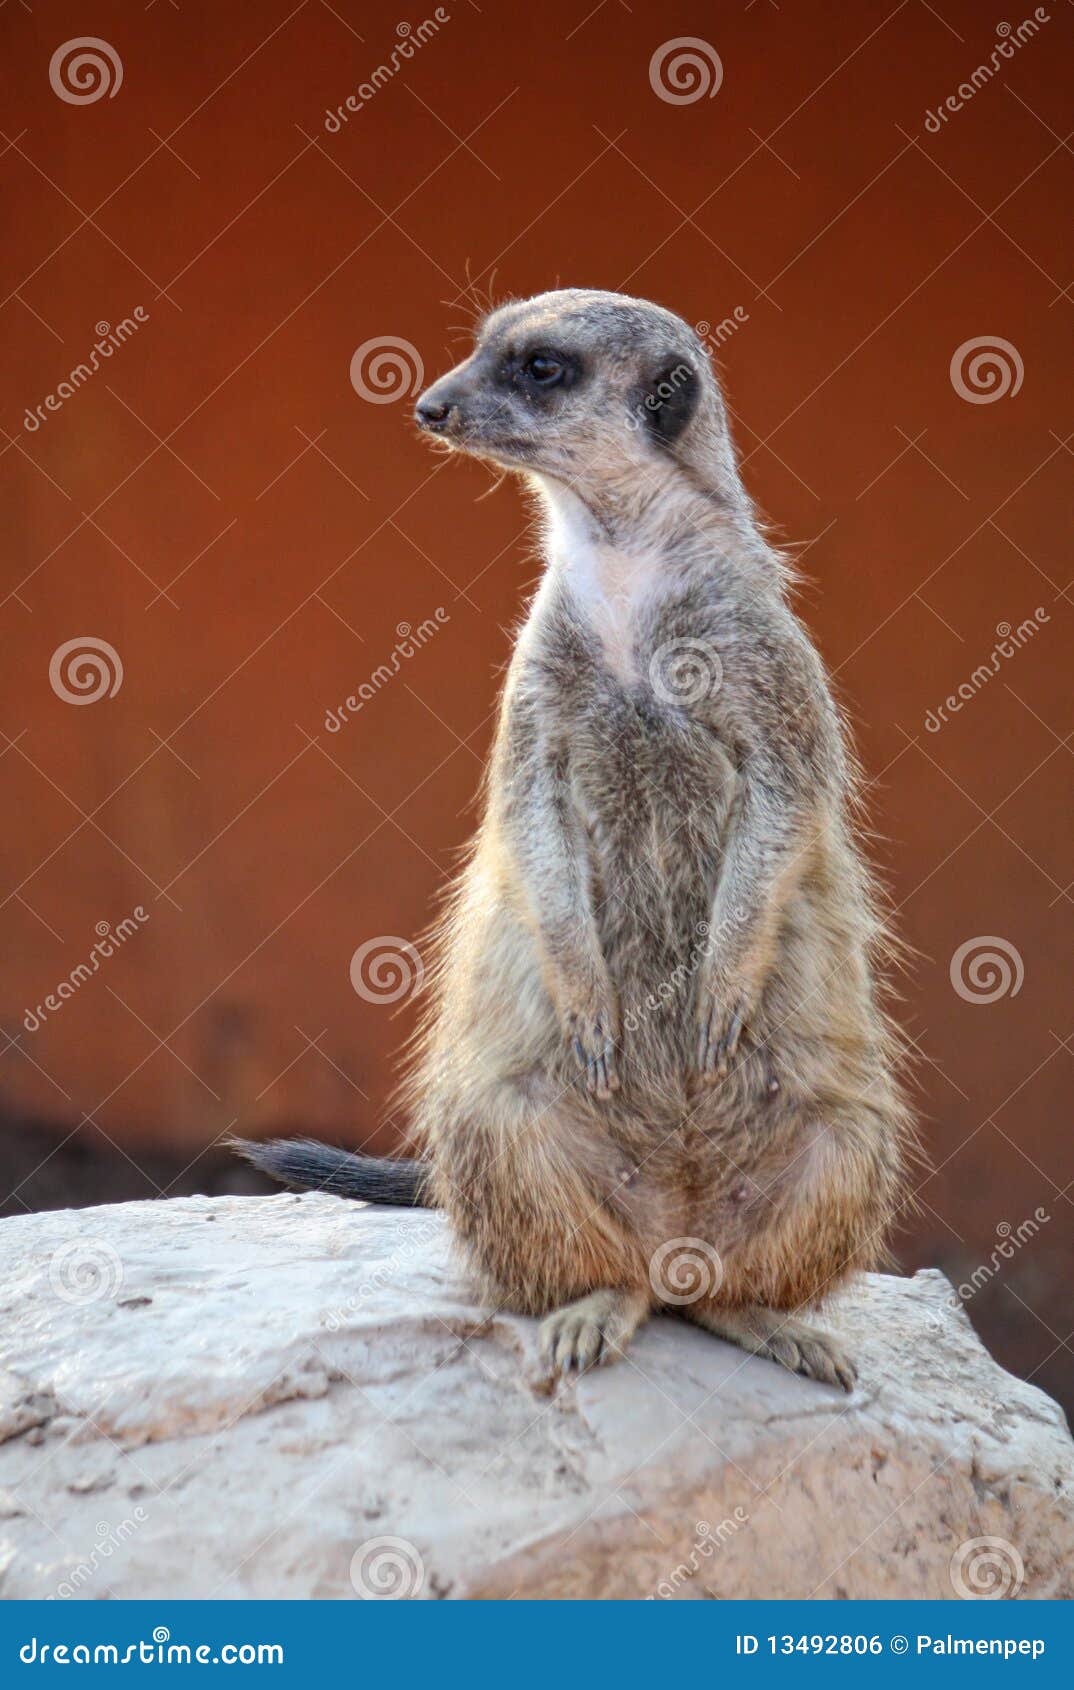 suricate or meerkat